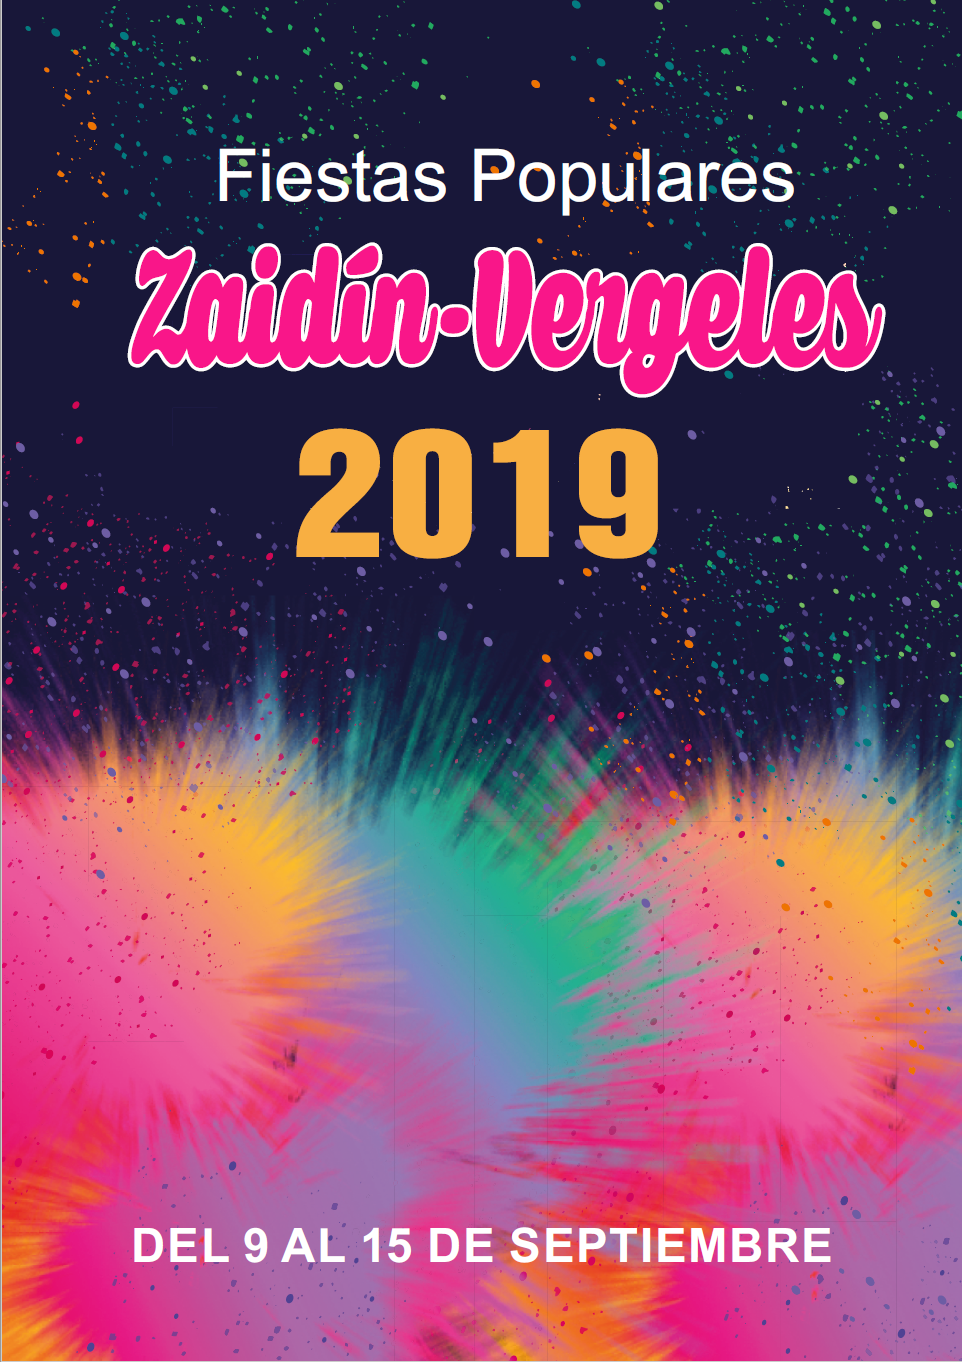 ©Ayto.Granada: Fiestas Populares Zaidn-Vergeles 2019